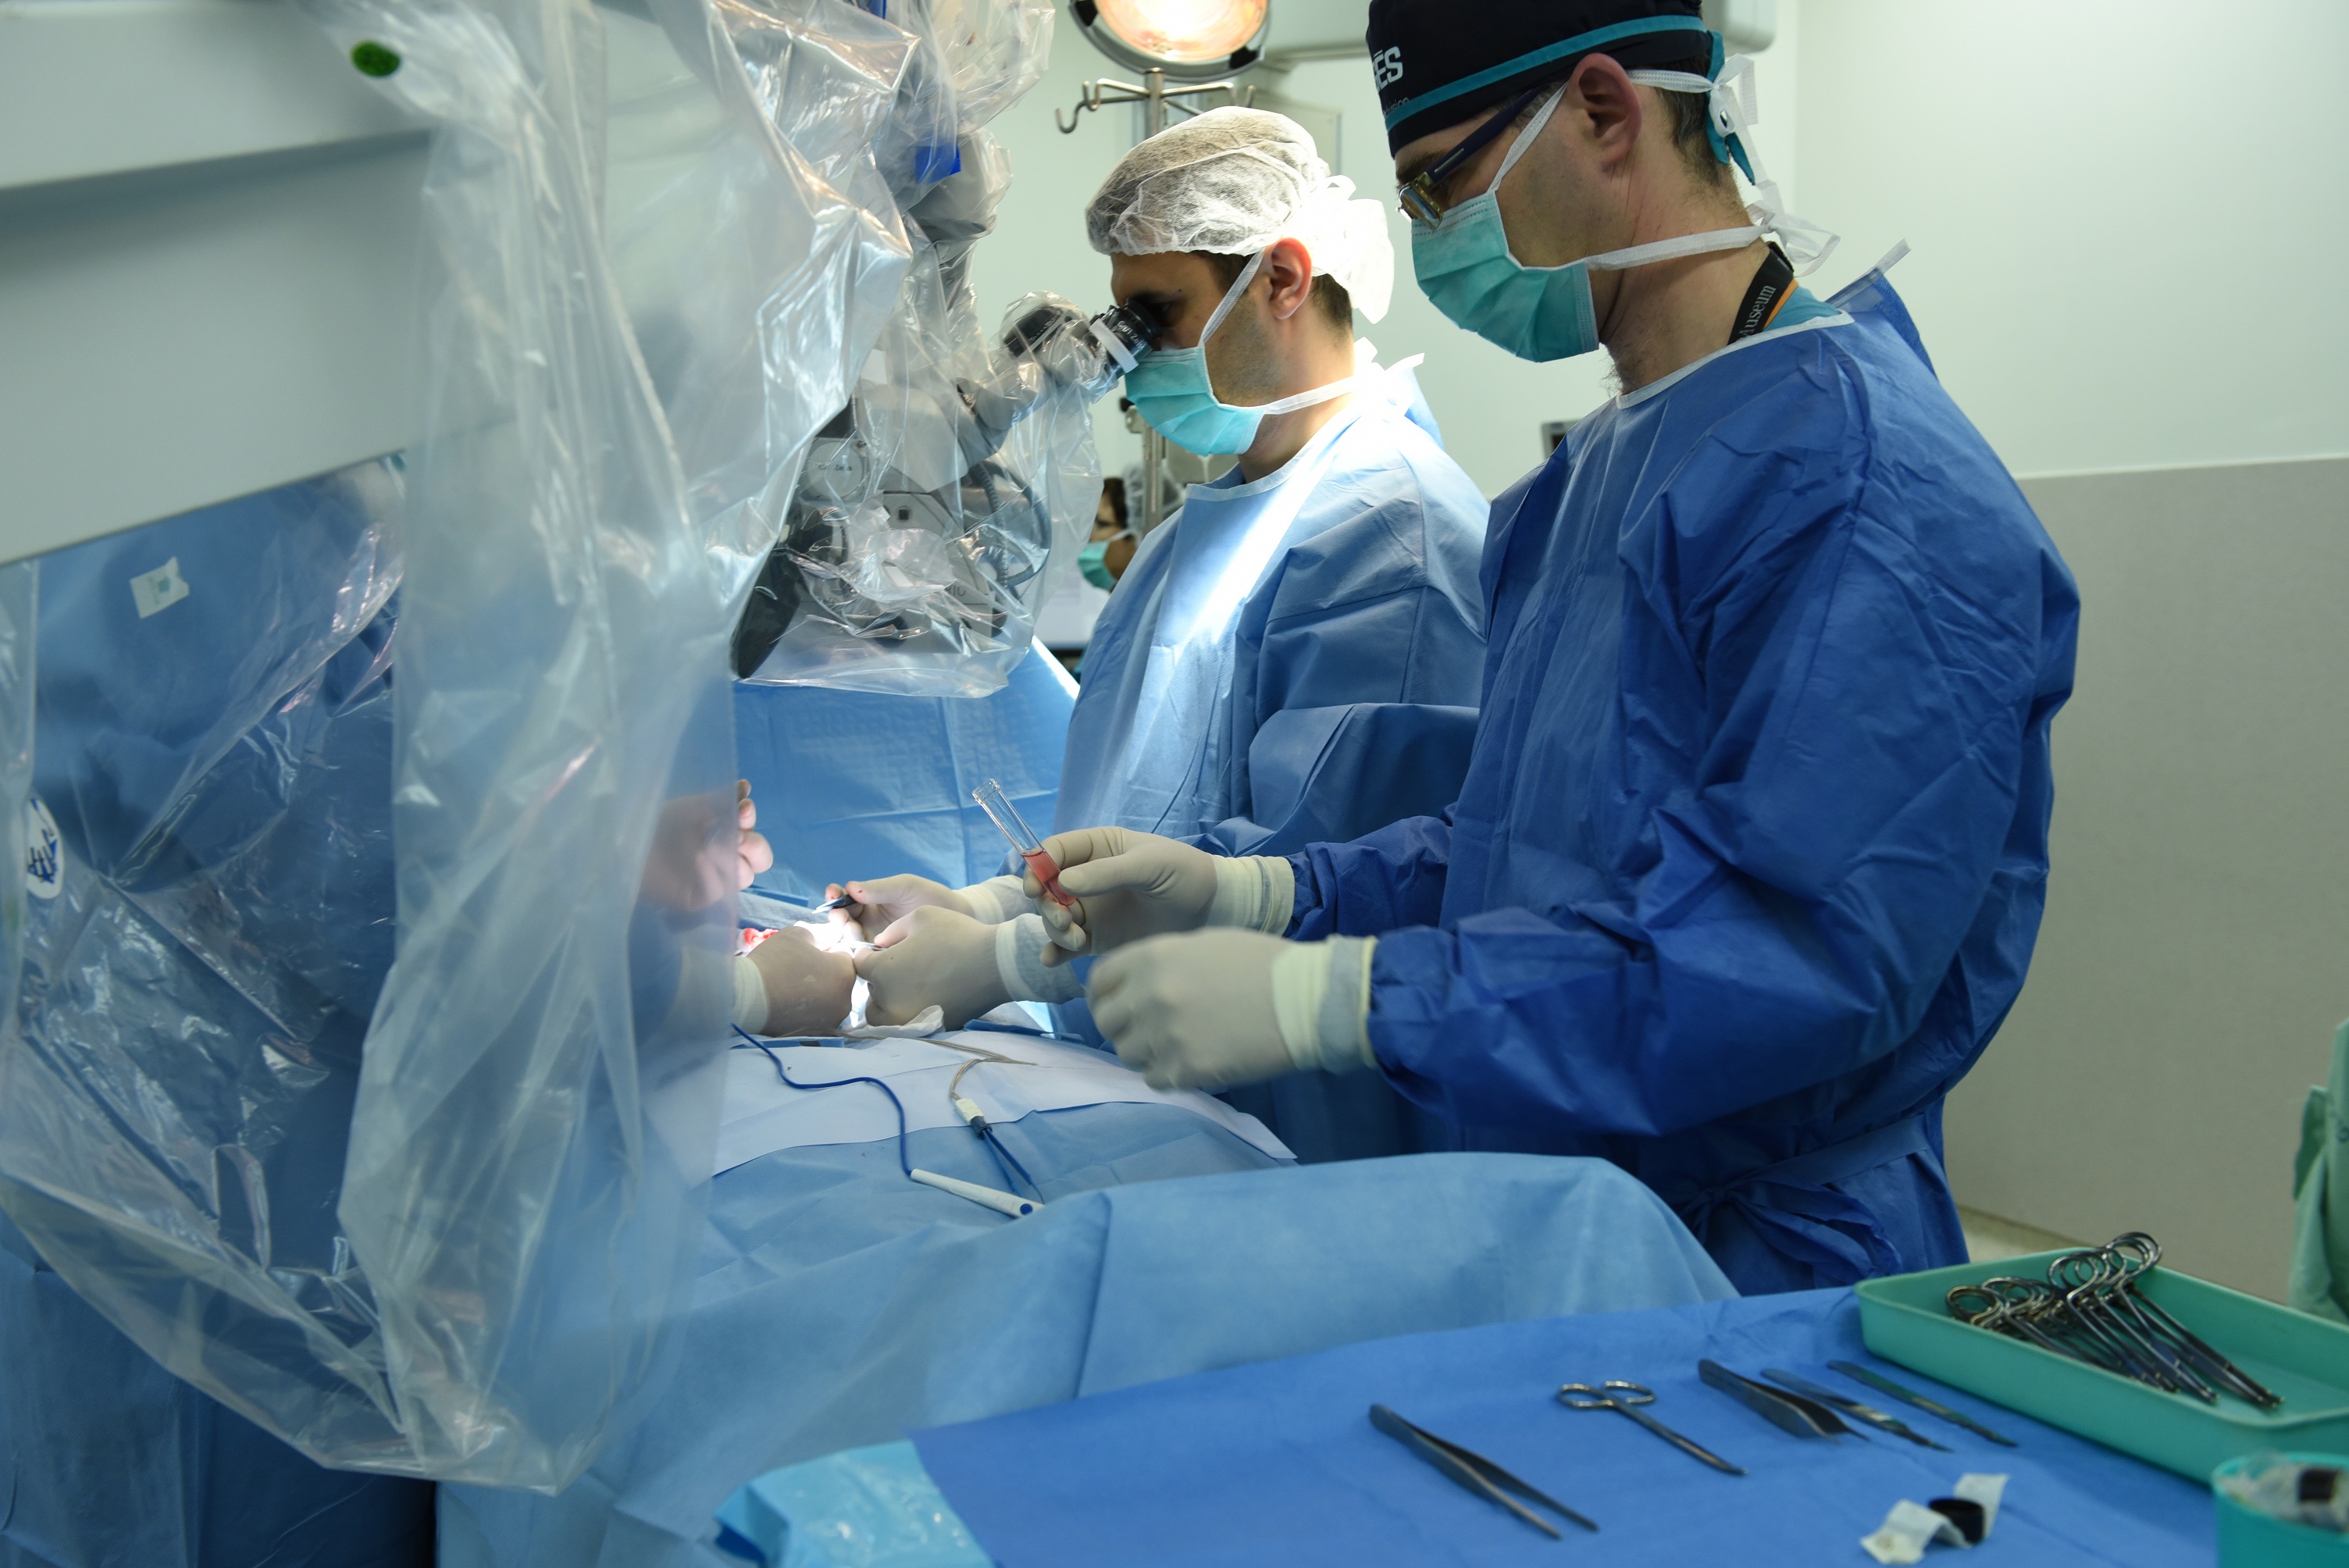 ניתוח מיקרו-טסה בשבוע הפוריות בקריה הרפואית רמב”ם (צילום: איתמר השש-דניאל, דוברות רמב"ם)